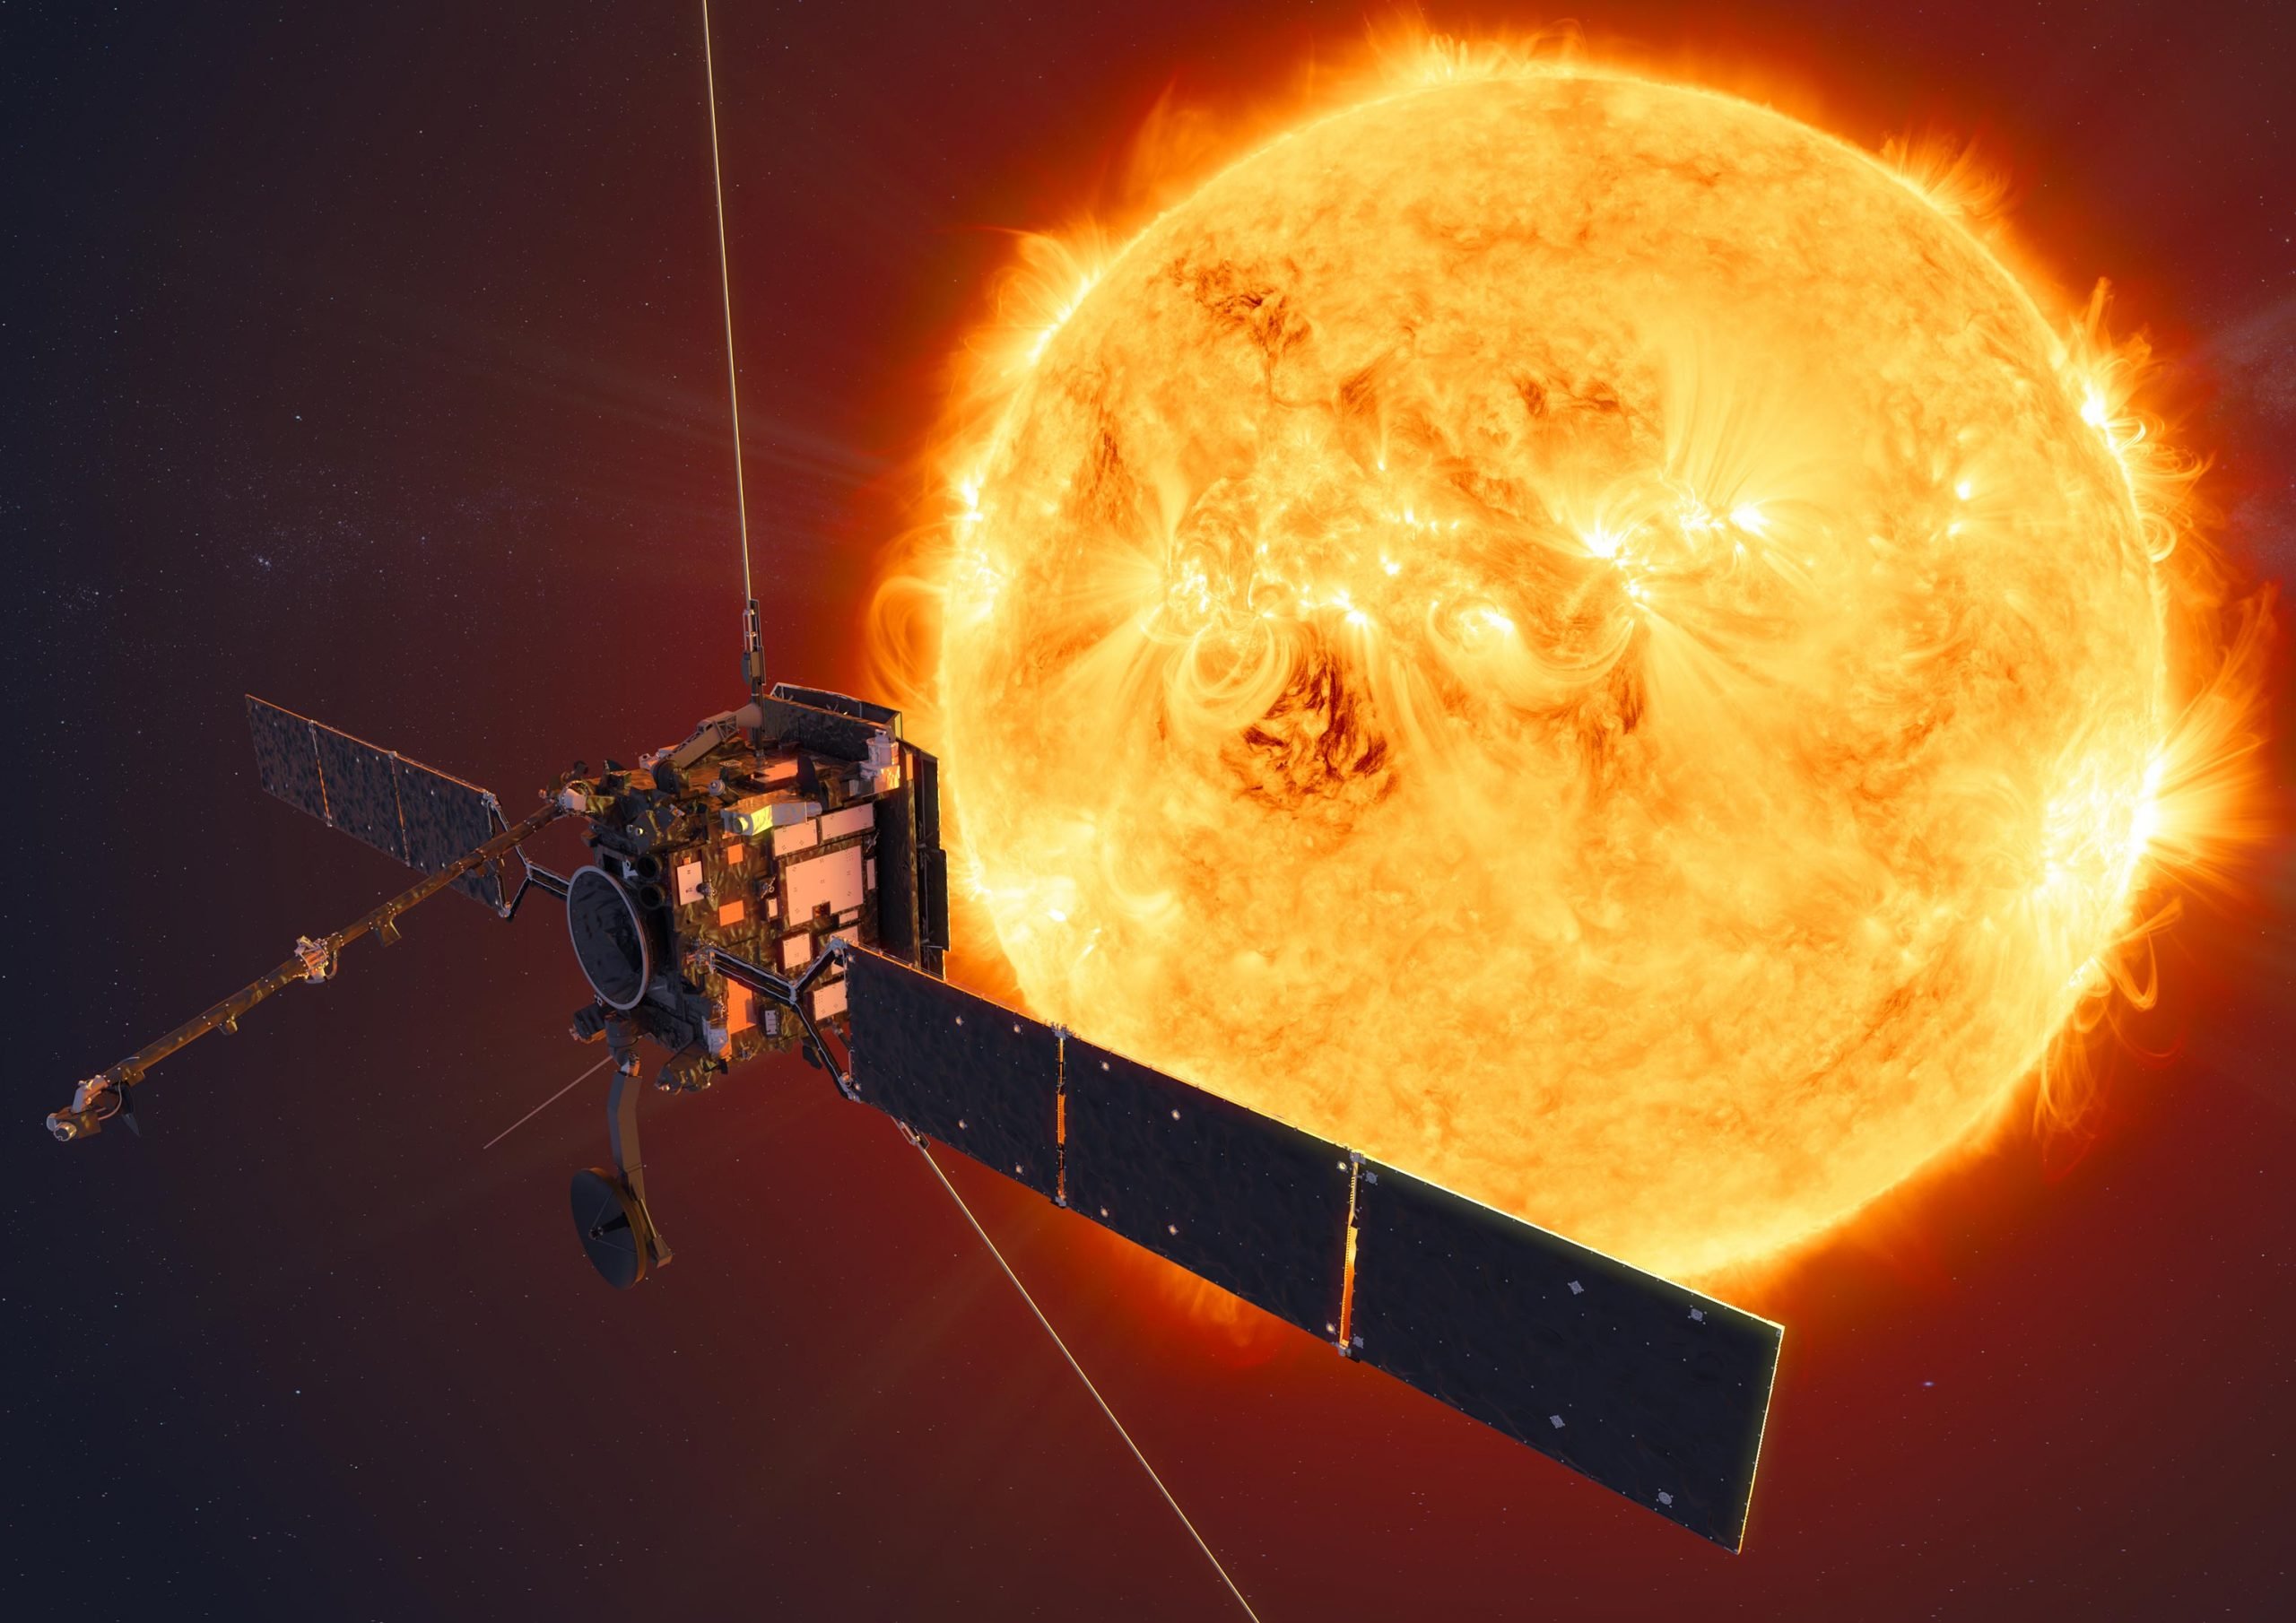 O módulo solar em órbita captura a delicada coroa do Sol com detalhes impressionantes [Video]